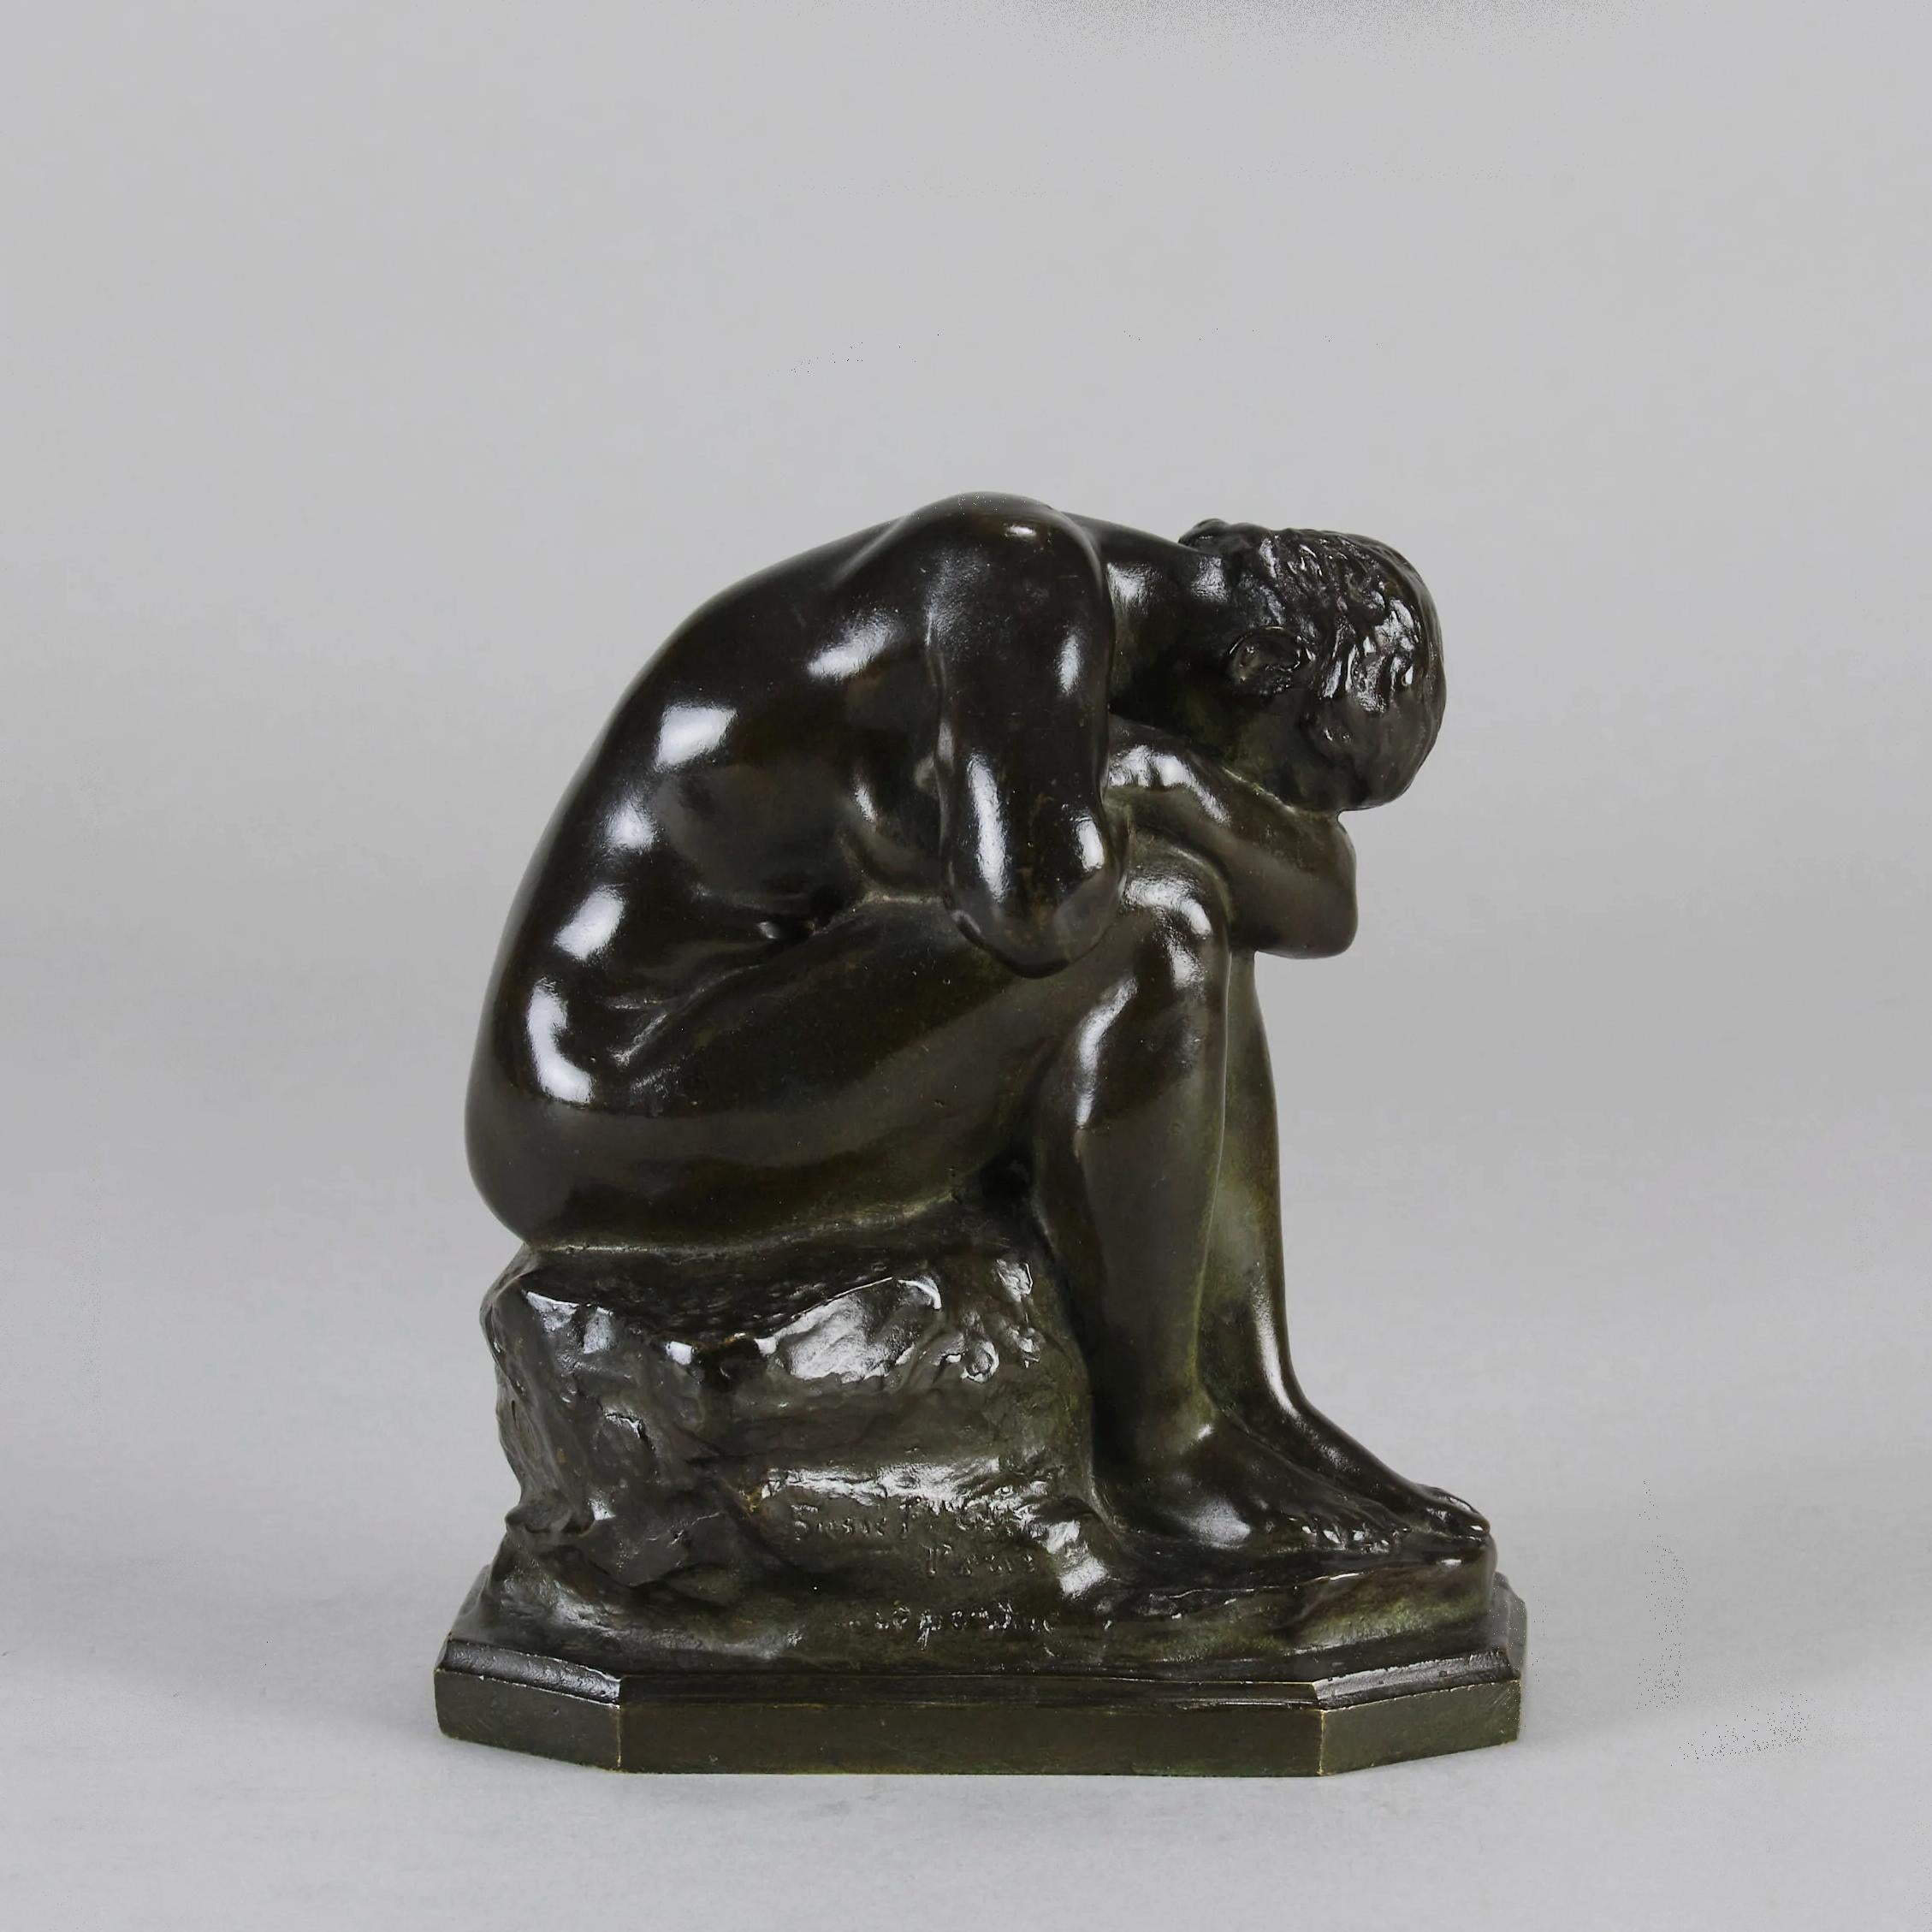 Énigmatique étude en bronze de la fin du XIXe siècle représentant un nu féminin assis s'appuyant sur ses genoux, cachant son visage, sur une base rectangulaire naturaliste intégrale, signée d'un côté DALOU au-dessus du miroir fissuré (tourné vers